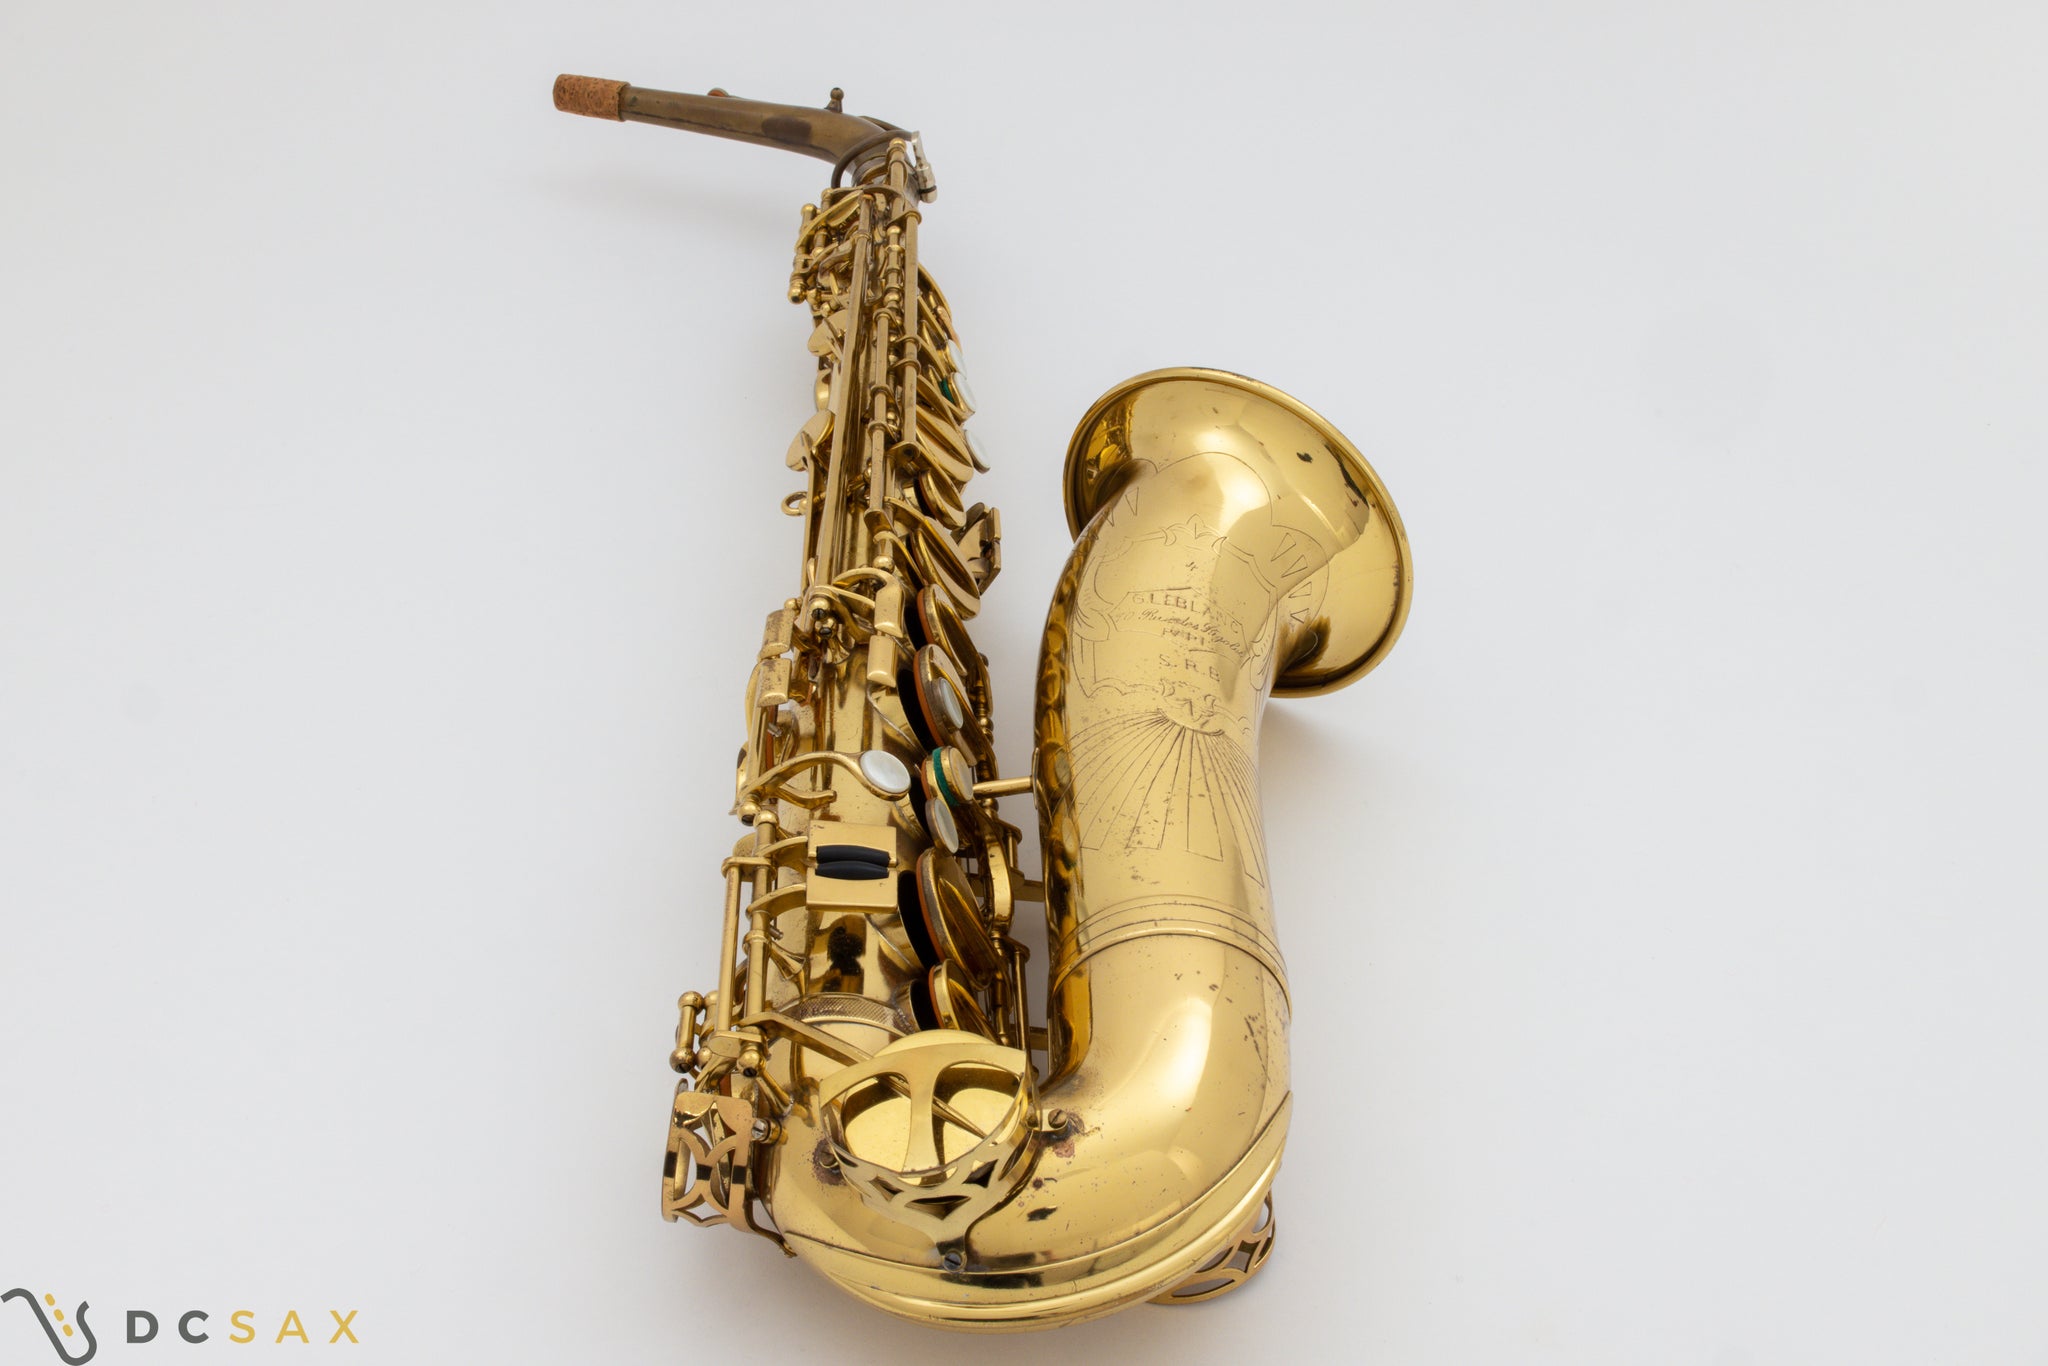 Leblanc SRB Alto Saxophone, S/N 4